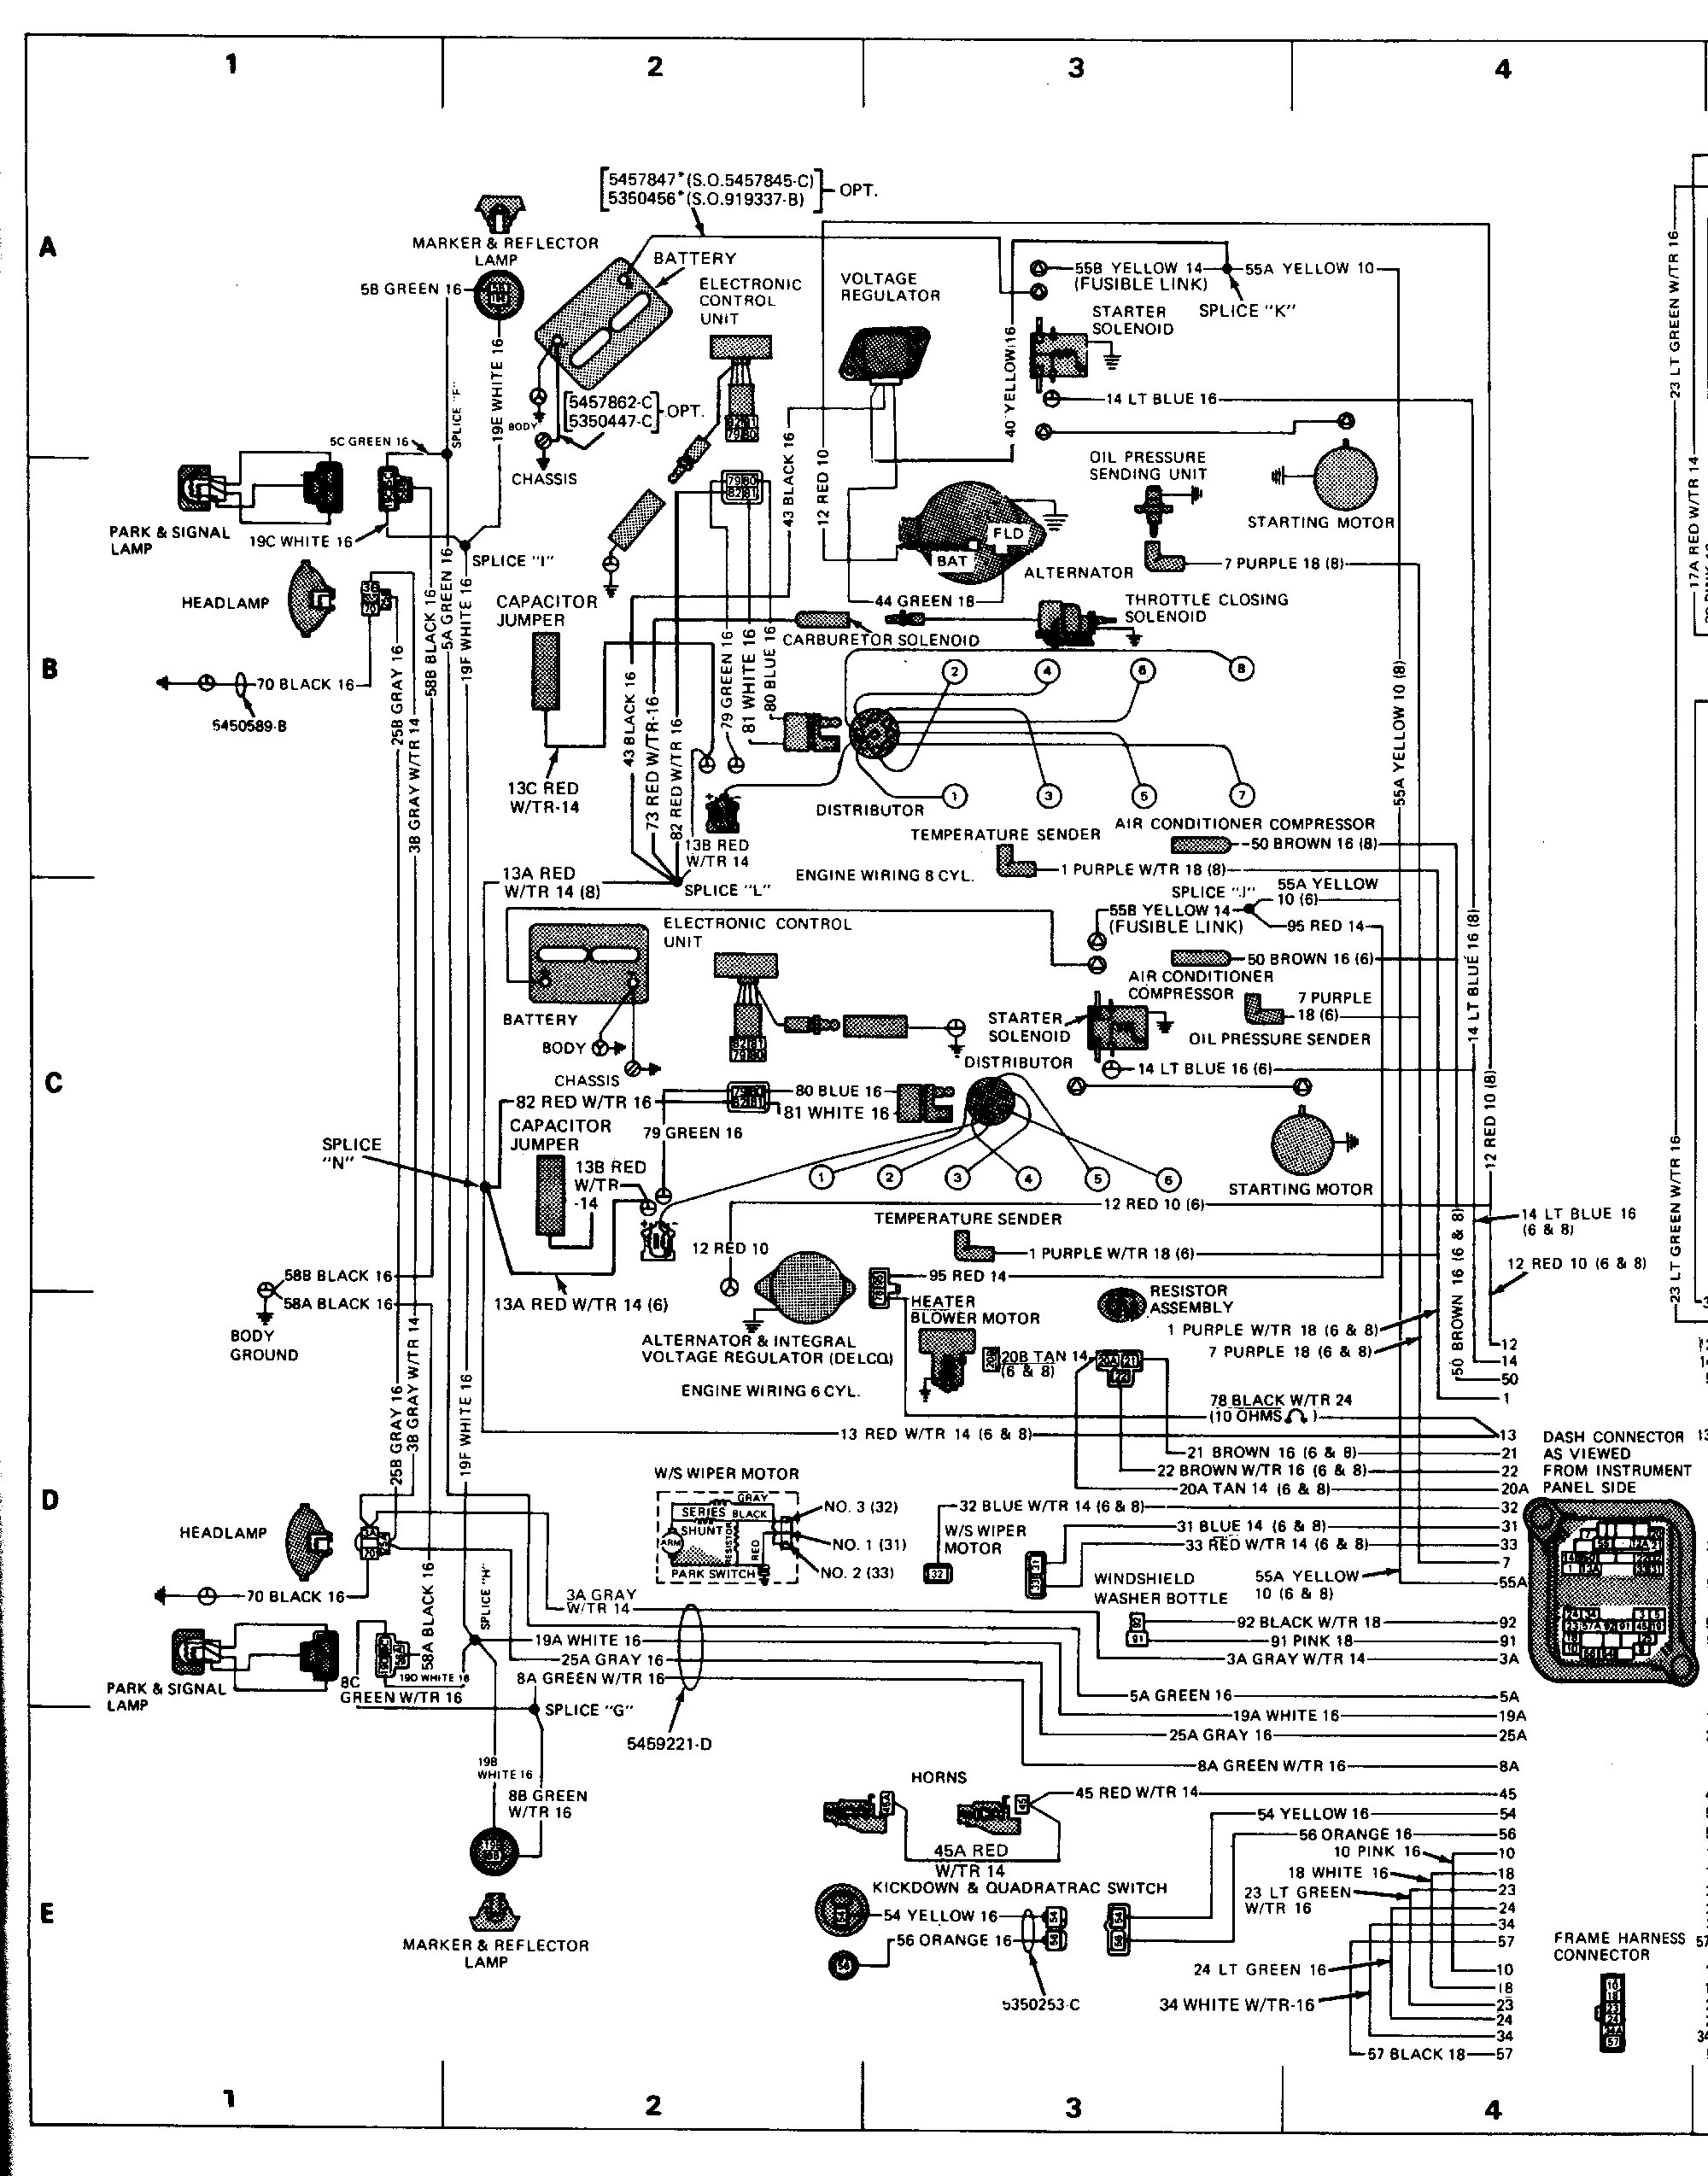 Wiring Diagram for the 1977 Cherokee (Alt.) - International Full Size